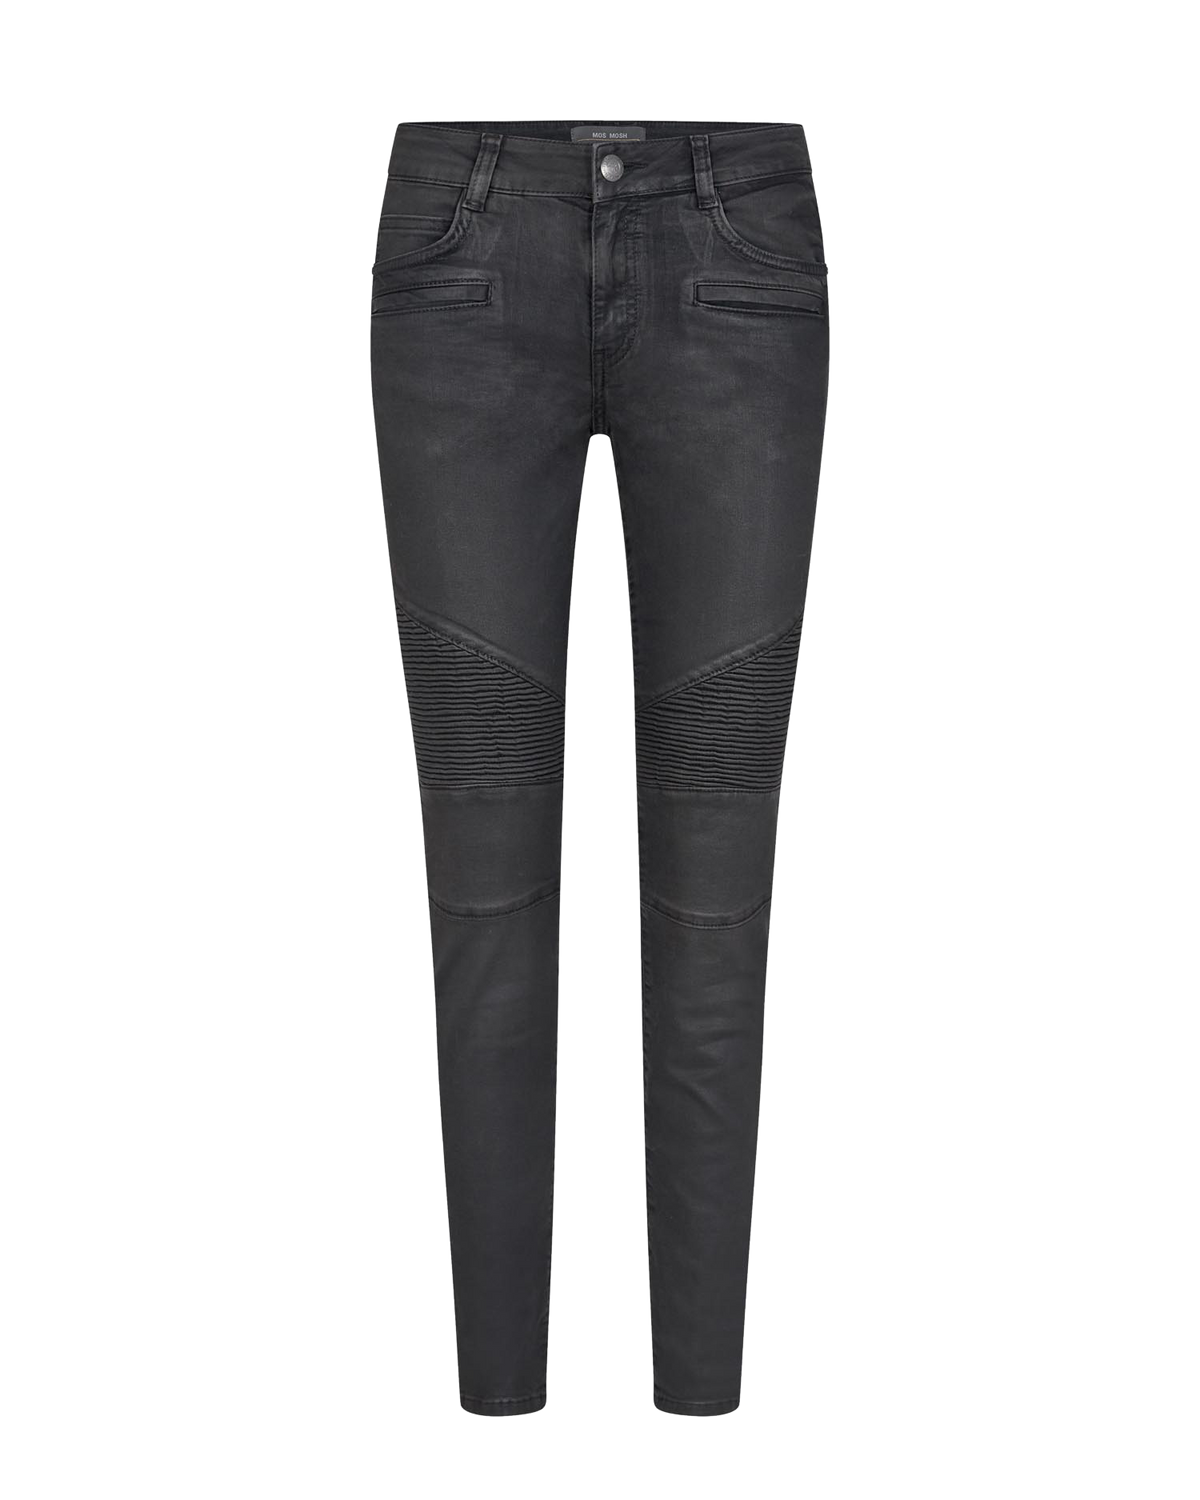 Waxed slim leg biker jeans in grey